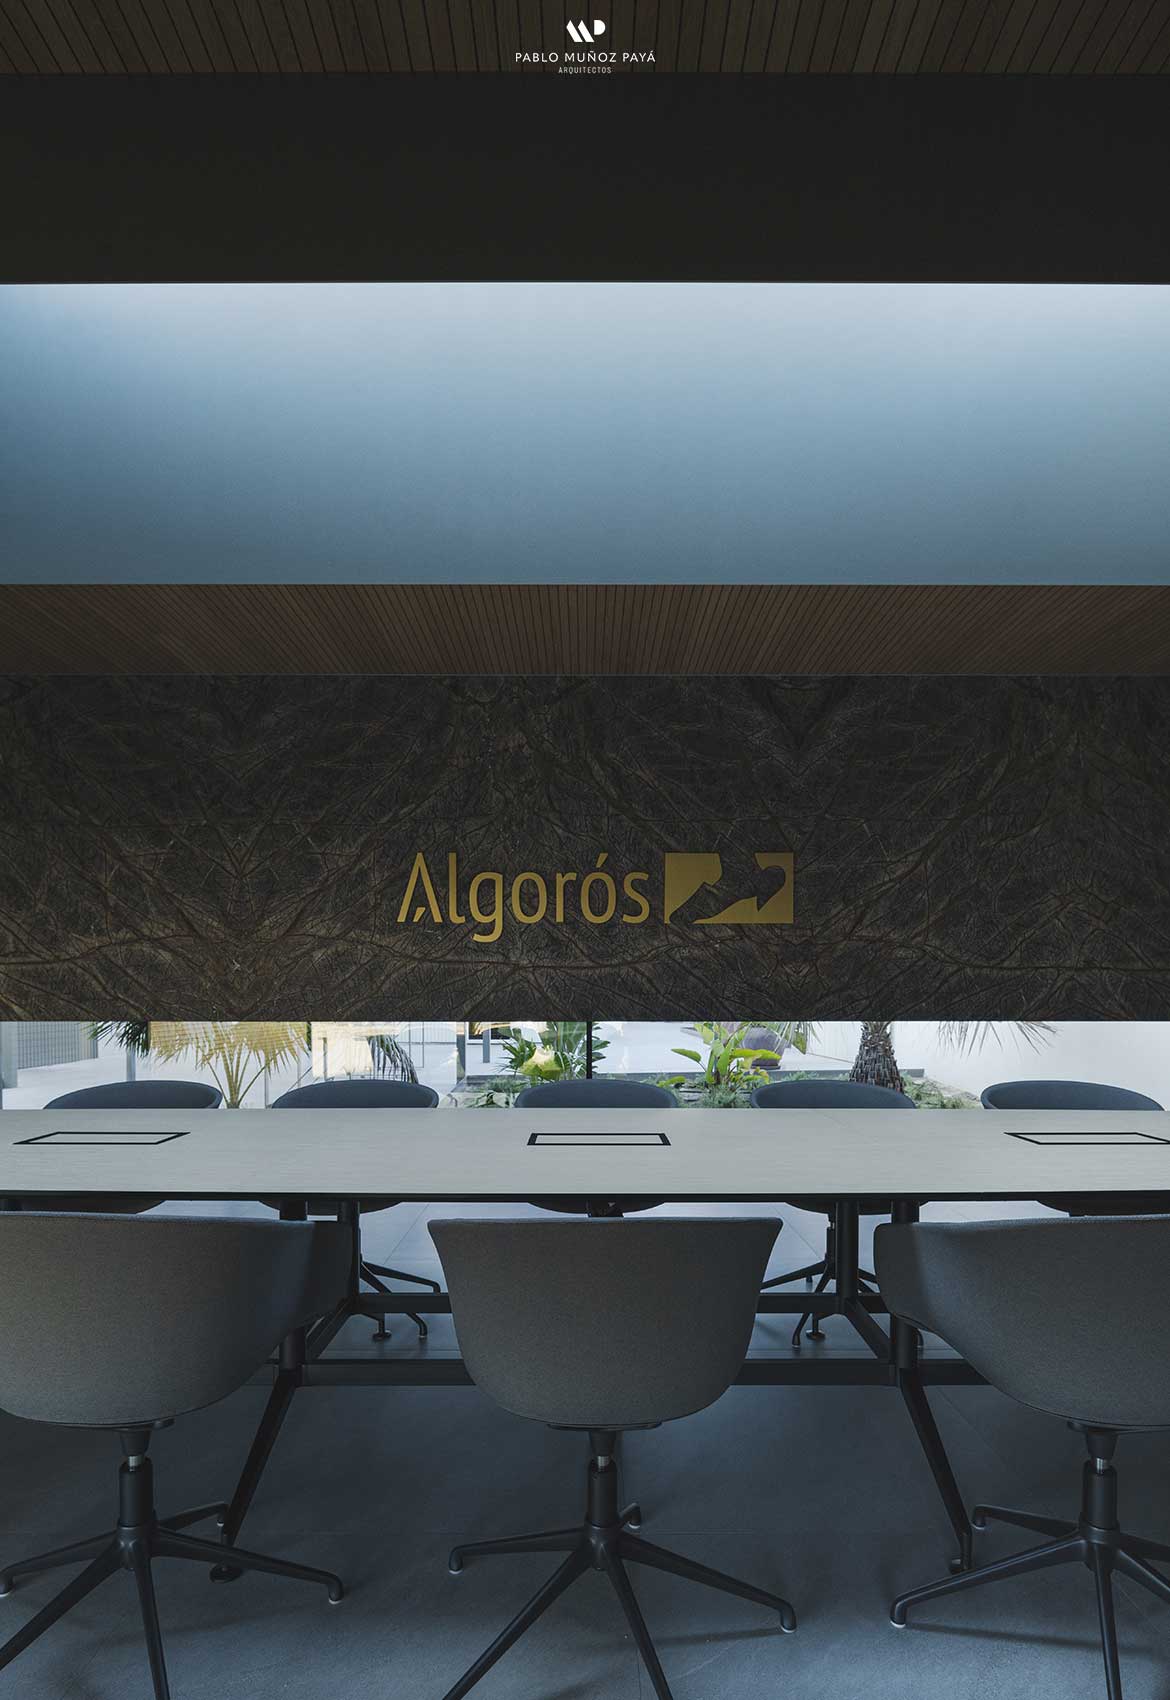 Reforma integral y diseño interior Oficinas Algorós - Pablo Muñoz Payá Arquitectos 29